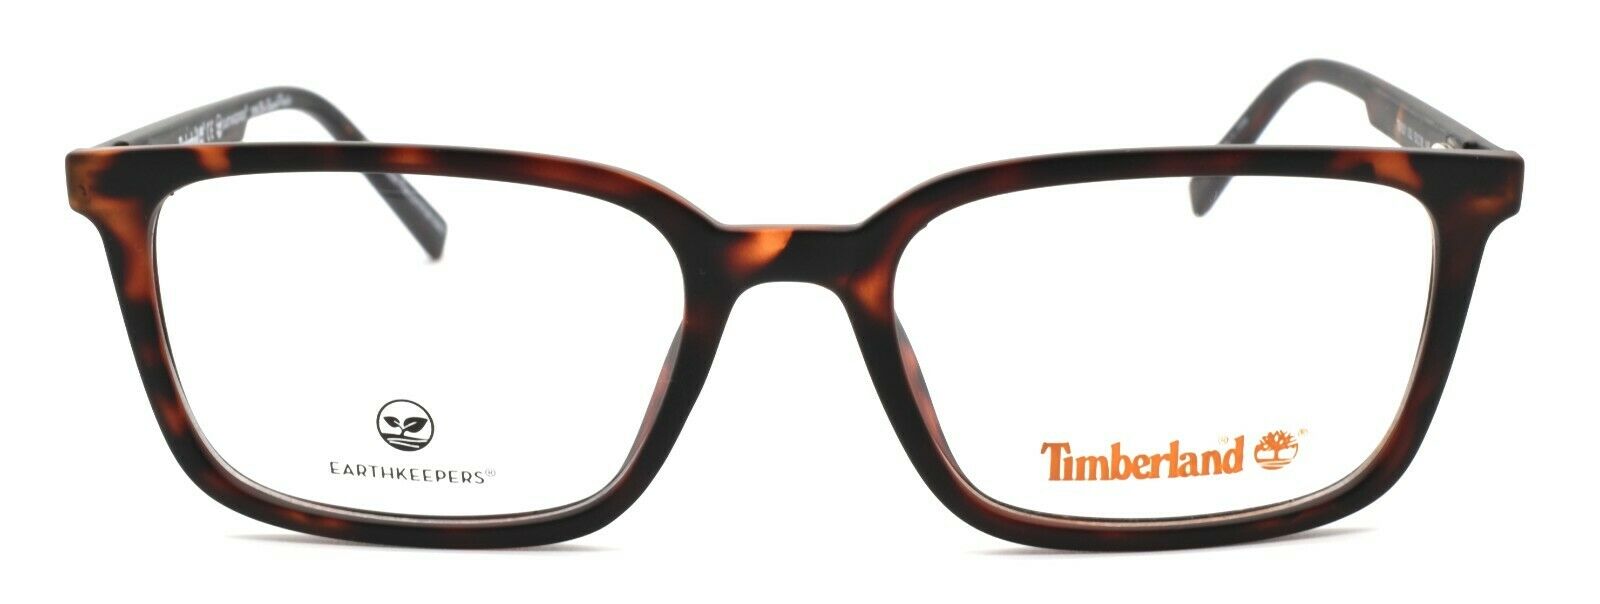 2-TIMBERLAND TB1621 052 Men's Eyeglasses Frames 53-18-145 Dark Havana + CASE-889214048950-IKSpecs